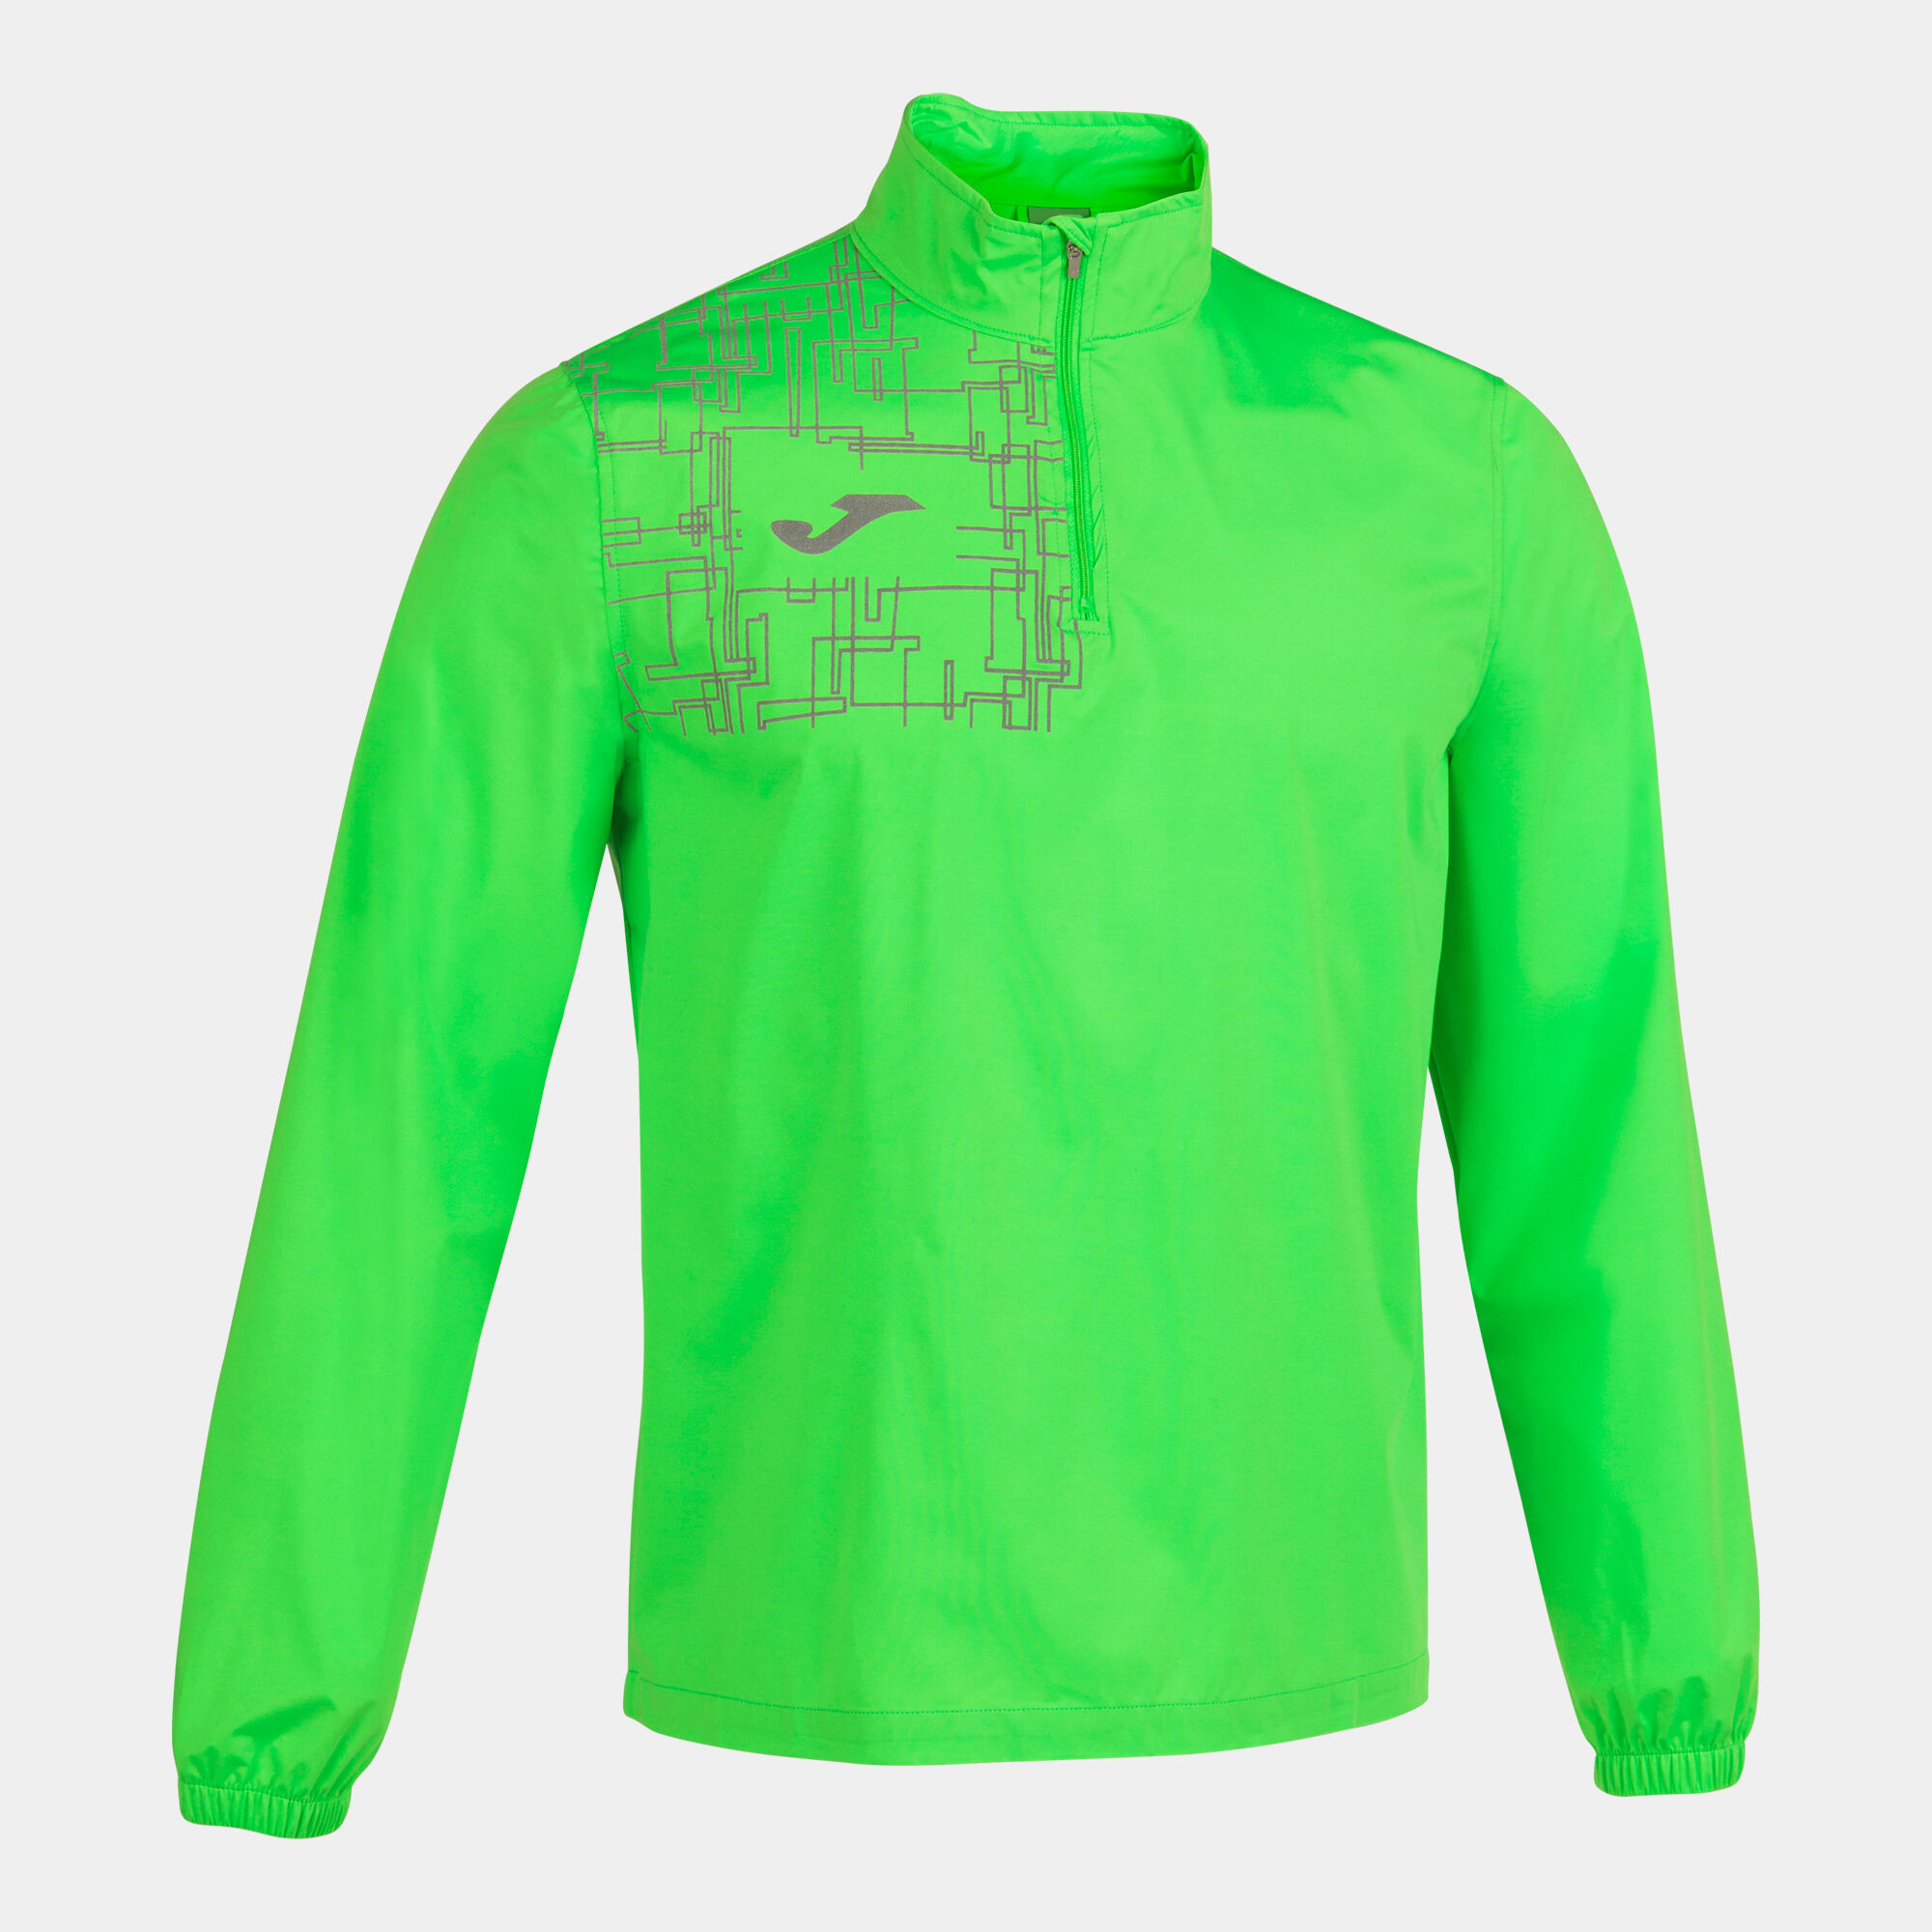 Bluza mężczyźni Elite VIII fluorescencyjny zielony